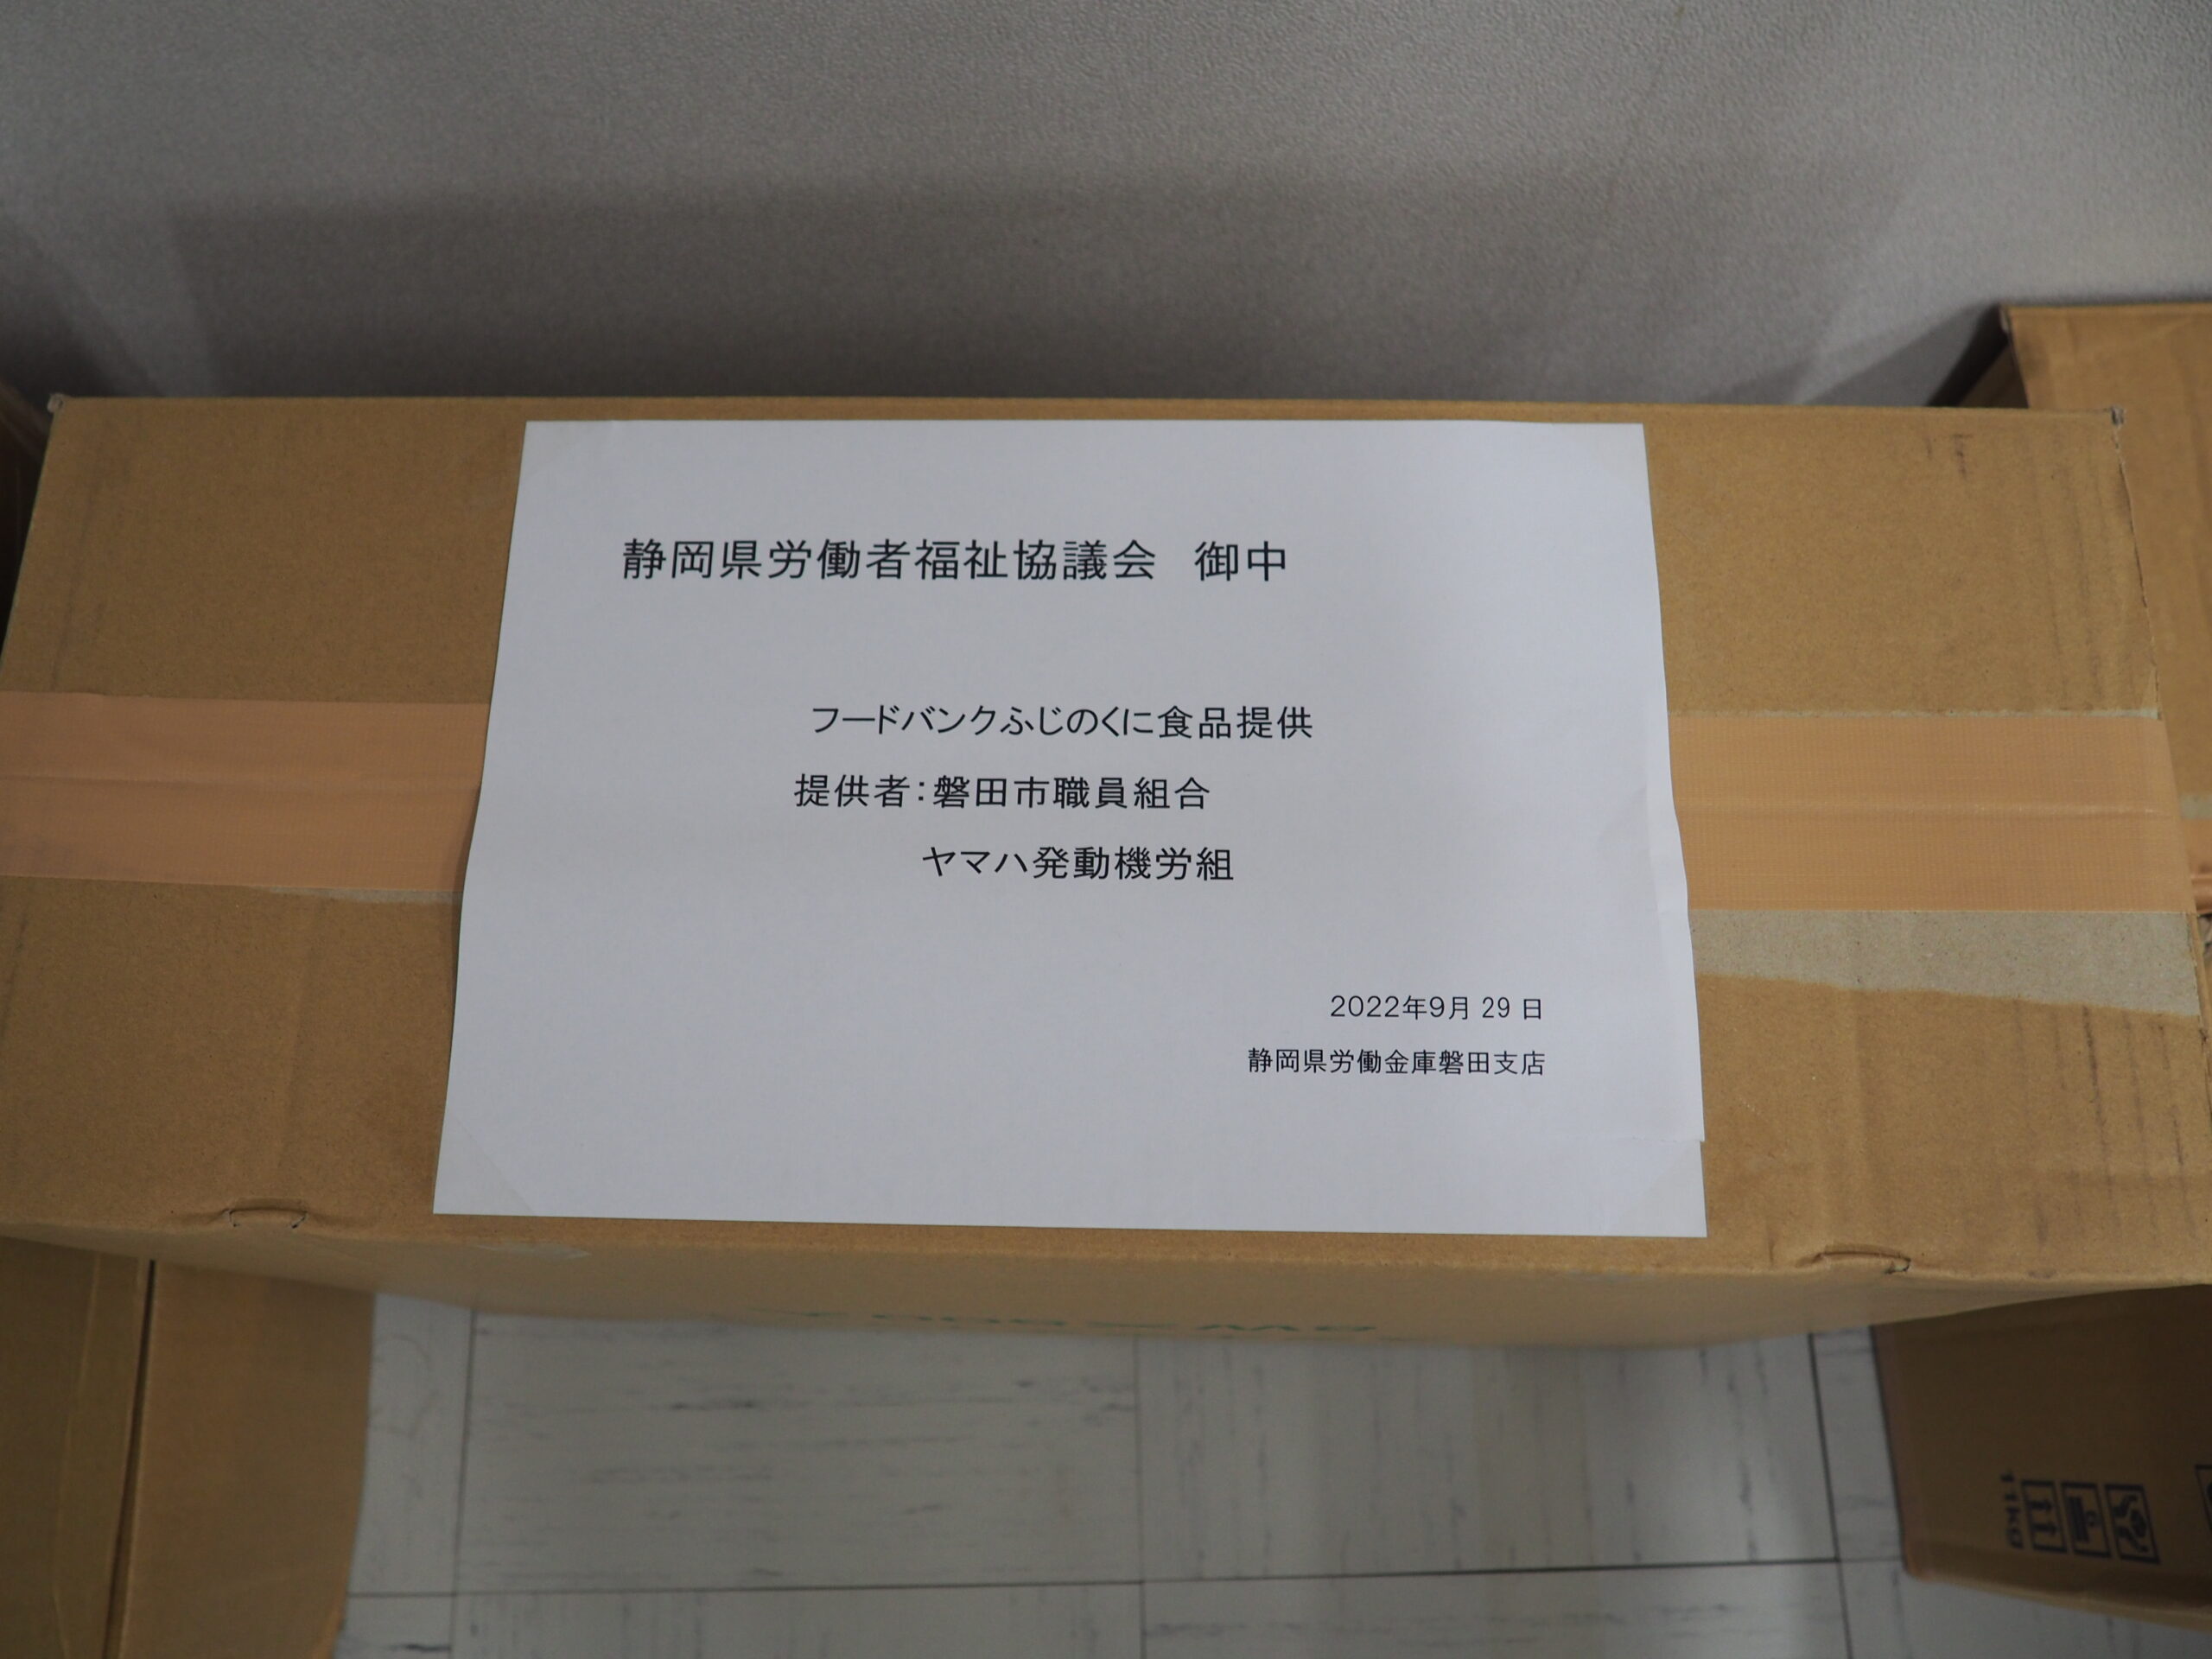 磐田市職員組合様・ヤマハ発動機労働組合様から食品を提供いただきました。